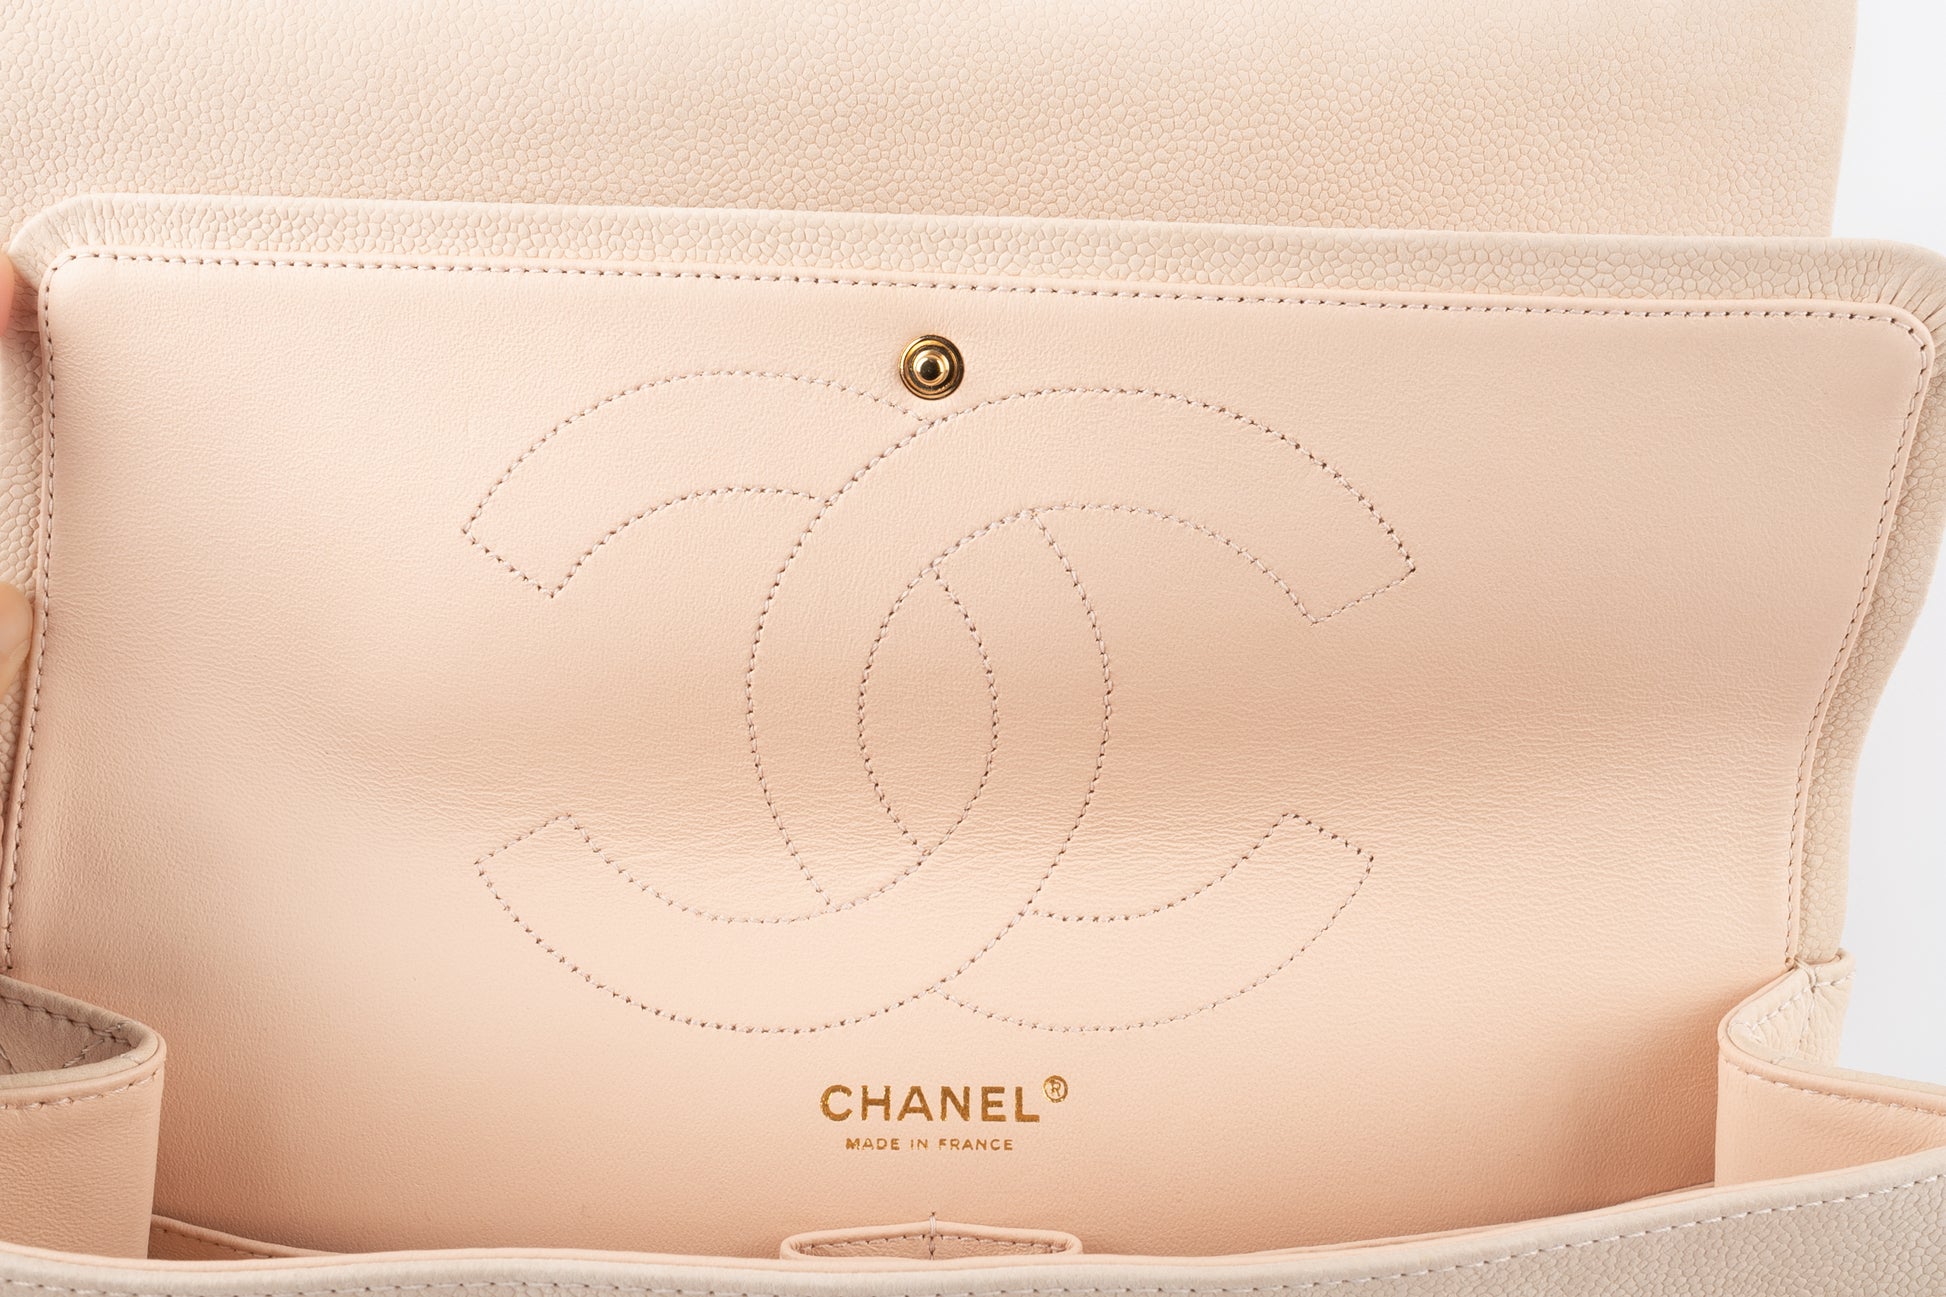 Sac 2.55 Chanel collection 2013